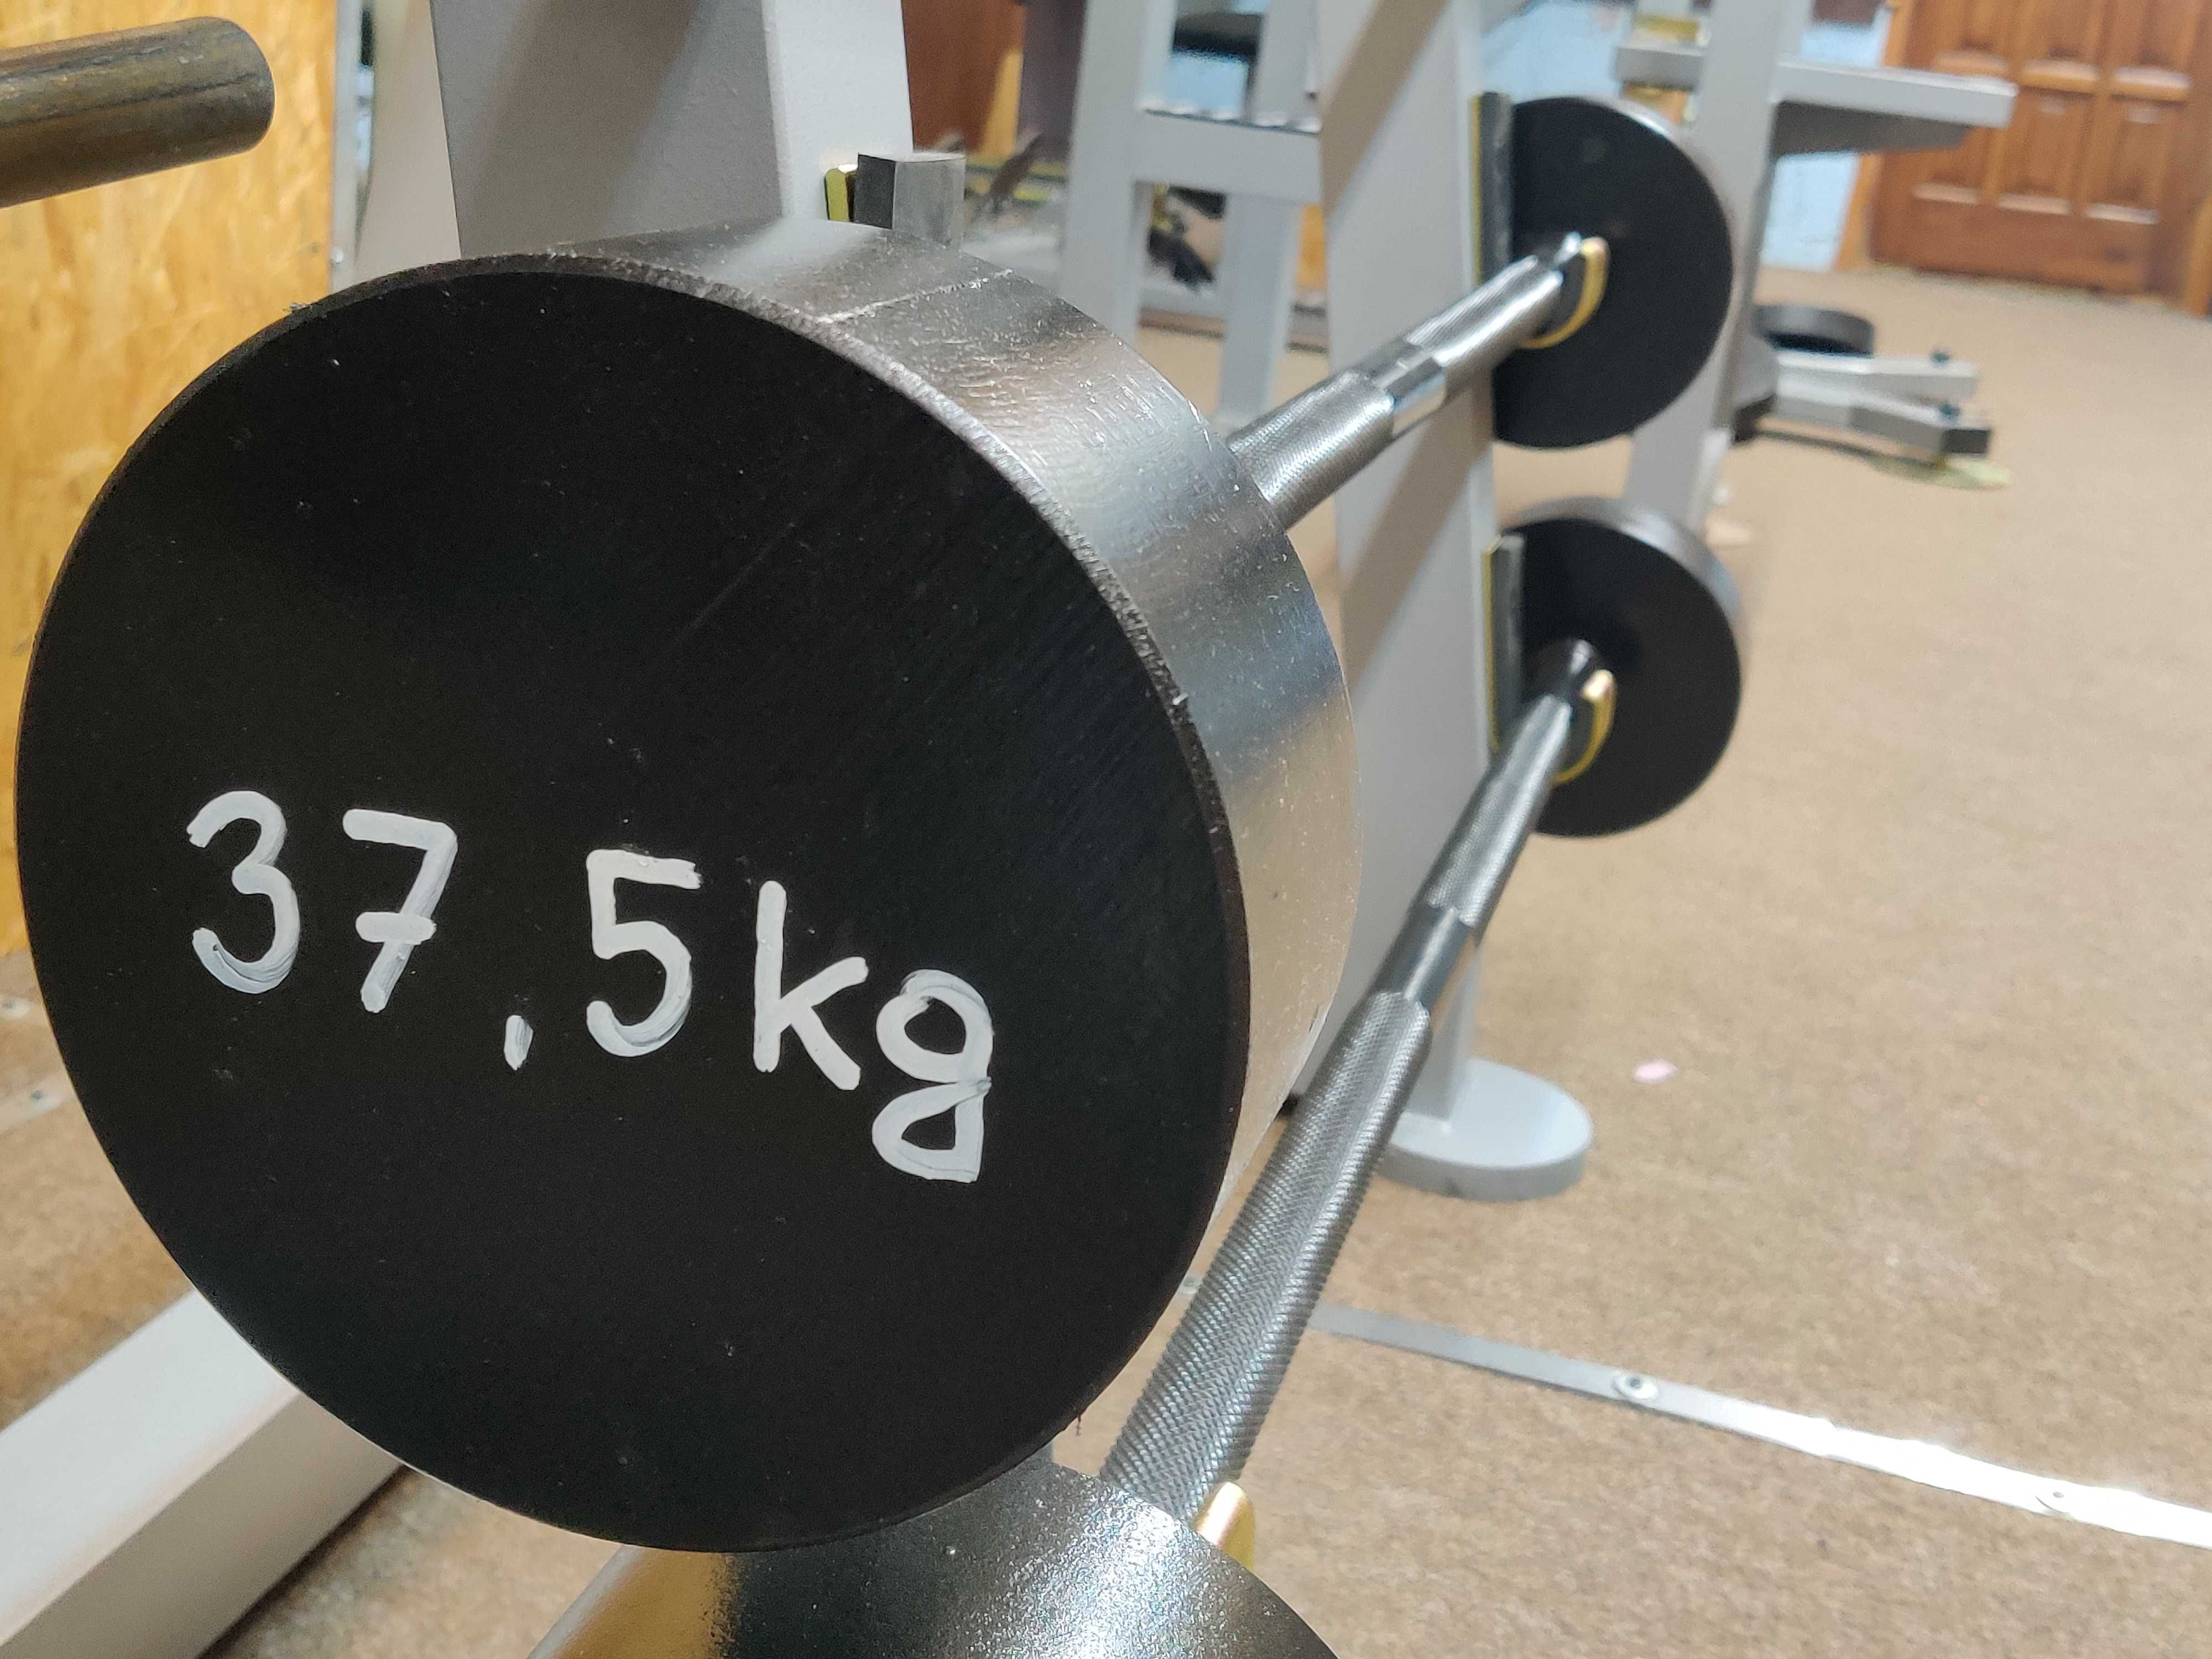 Sztanga stała na siłownię 37,5kg